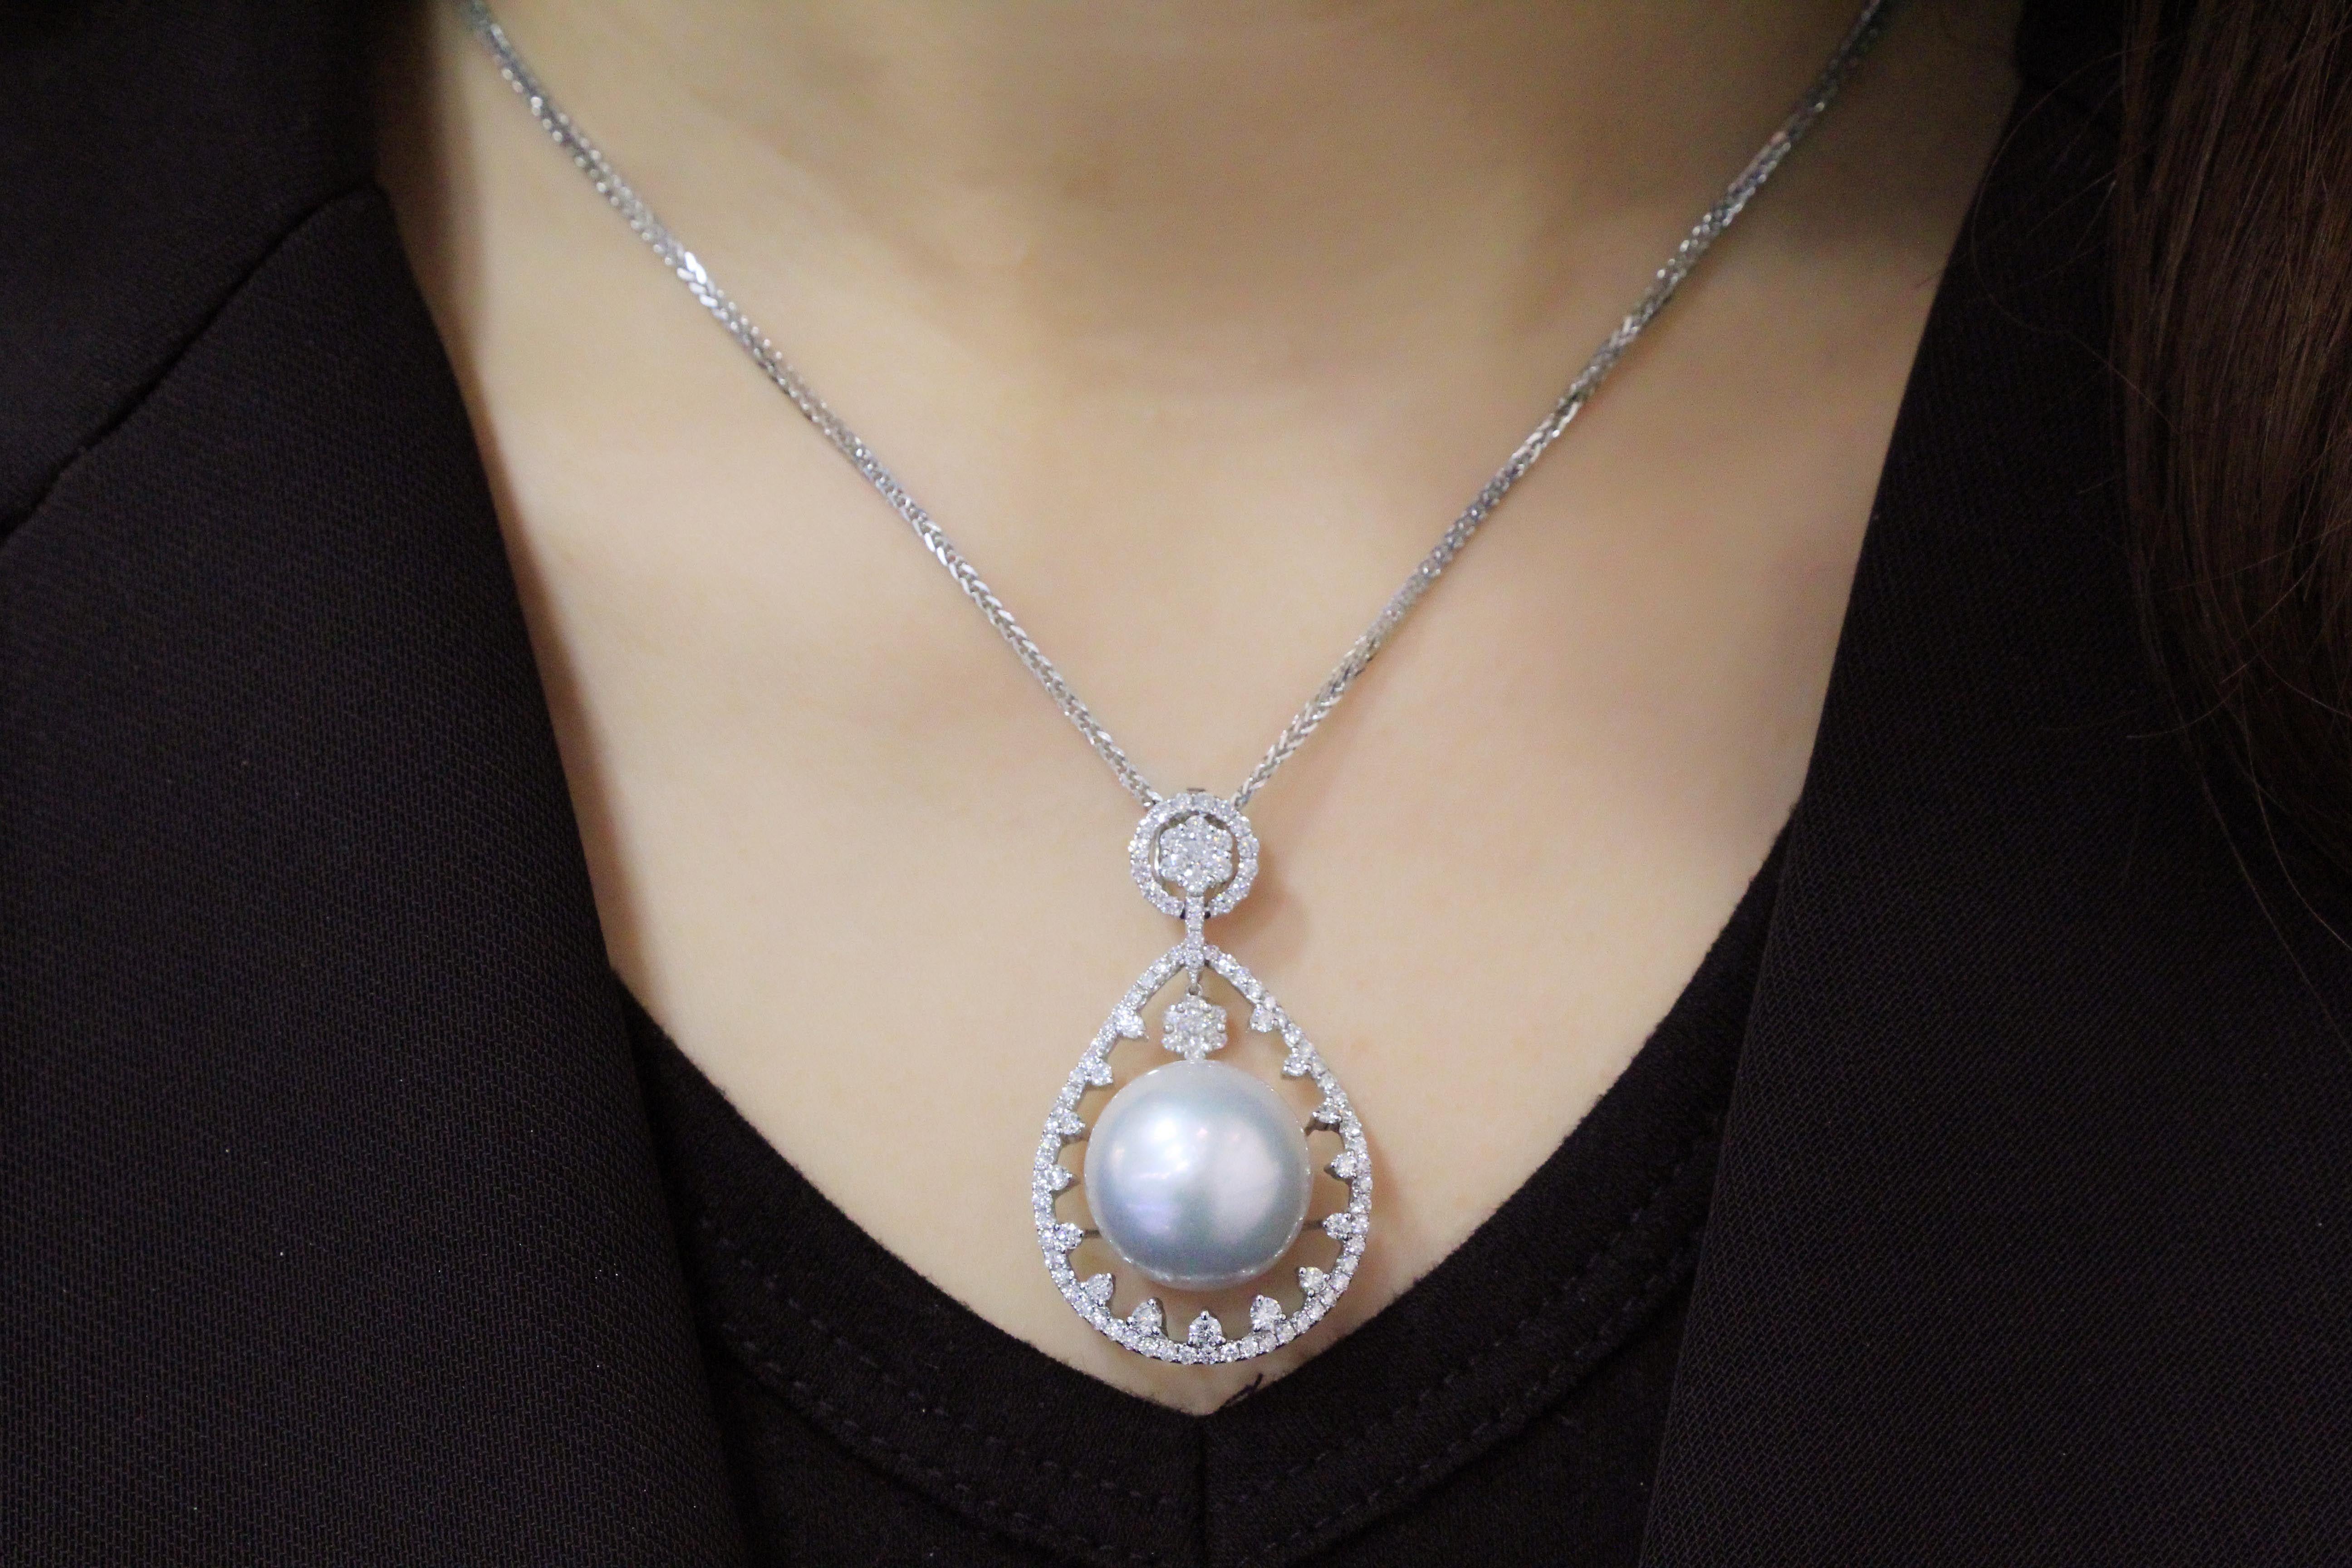 Brilliant Cut Rare South Sea White Pearl Diamond Pendant in 18 Karat Gold For Sale